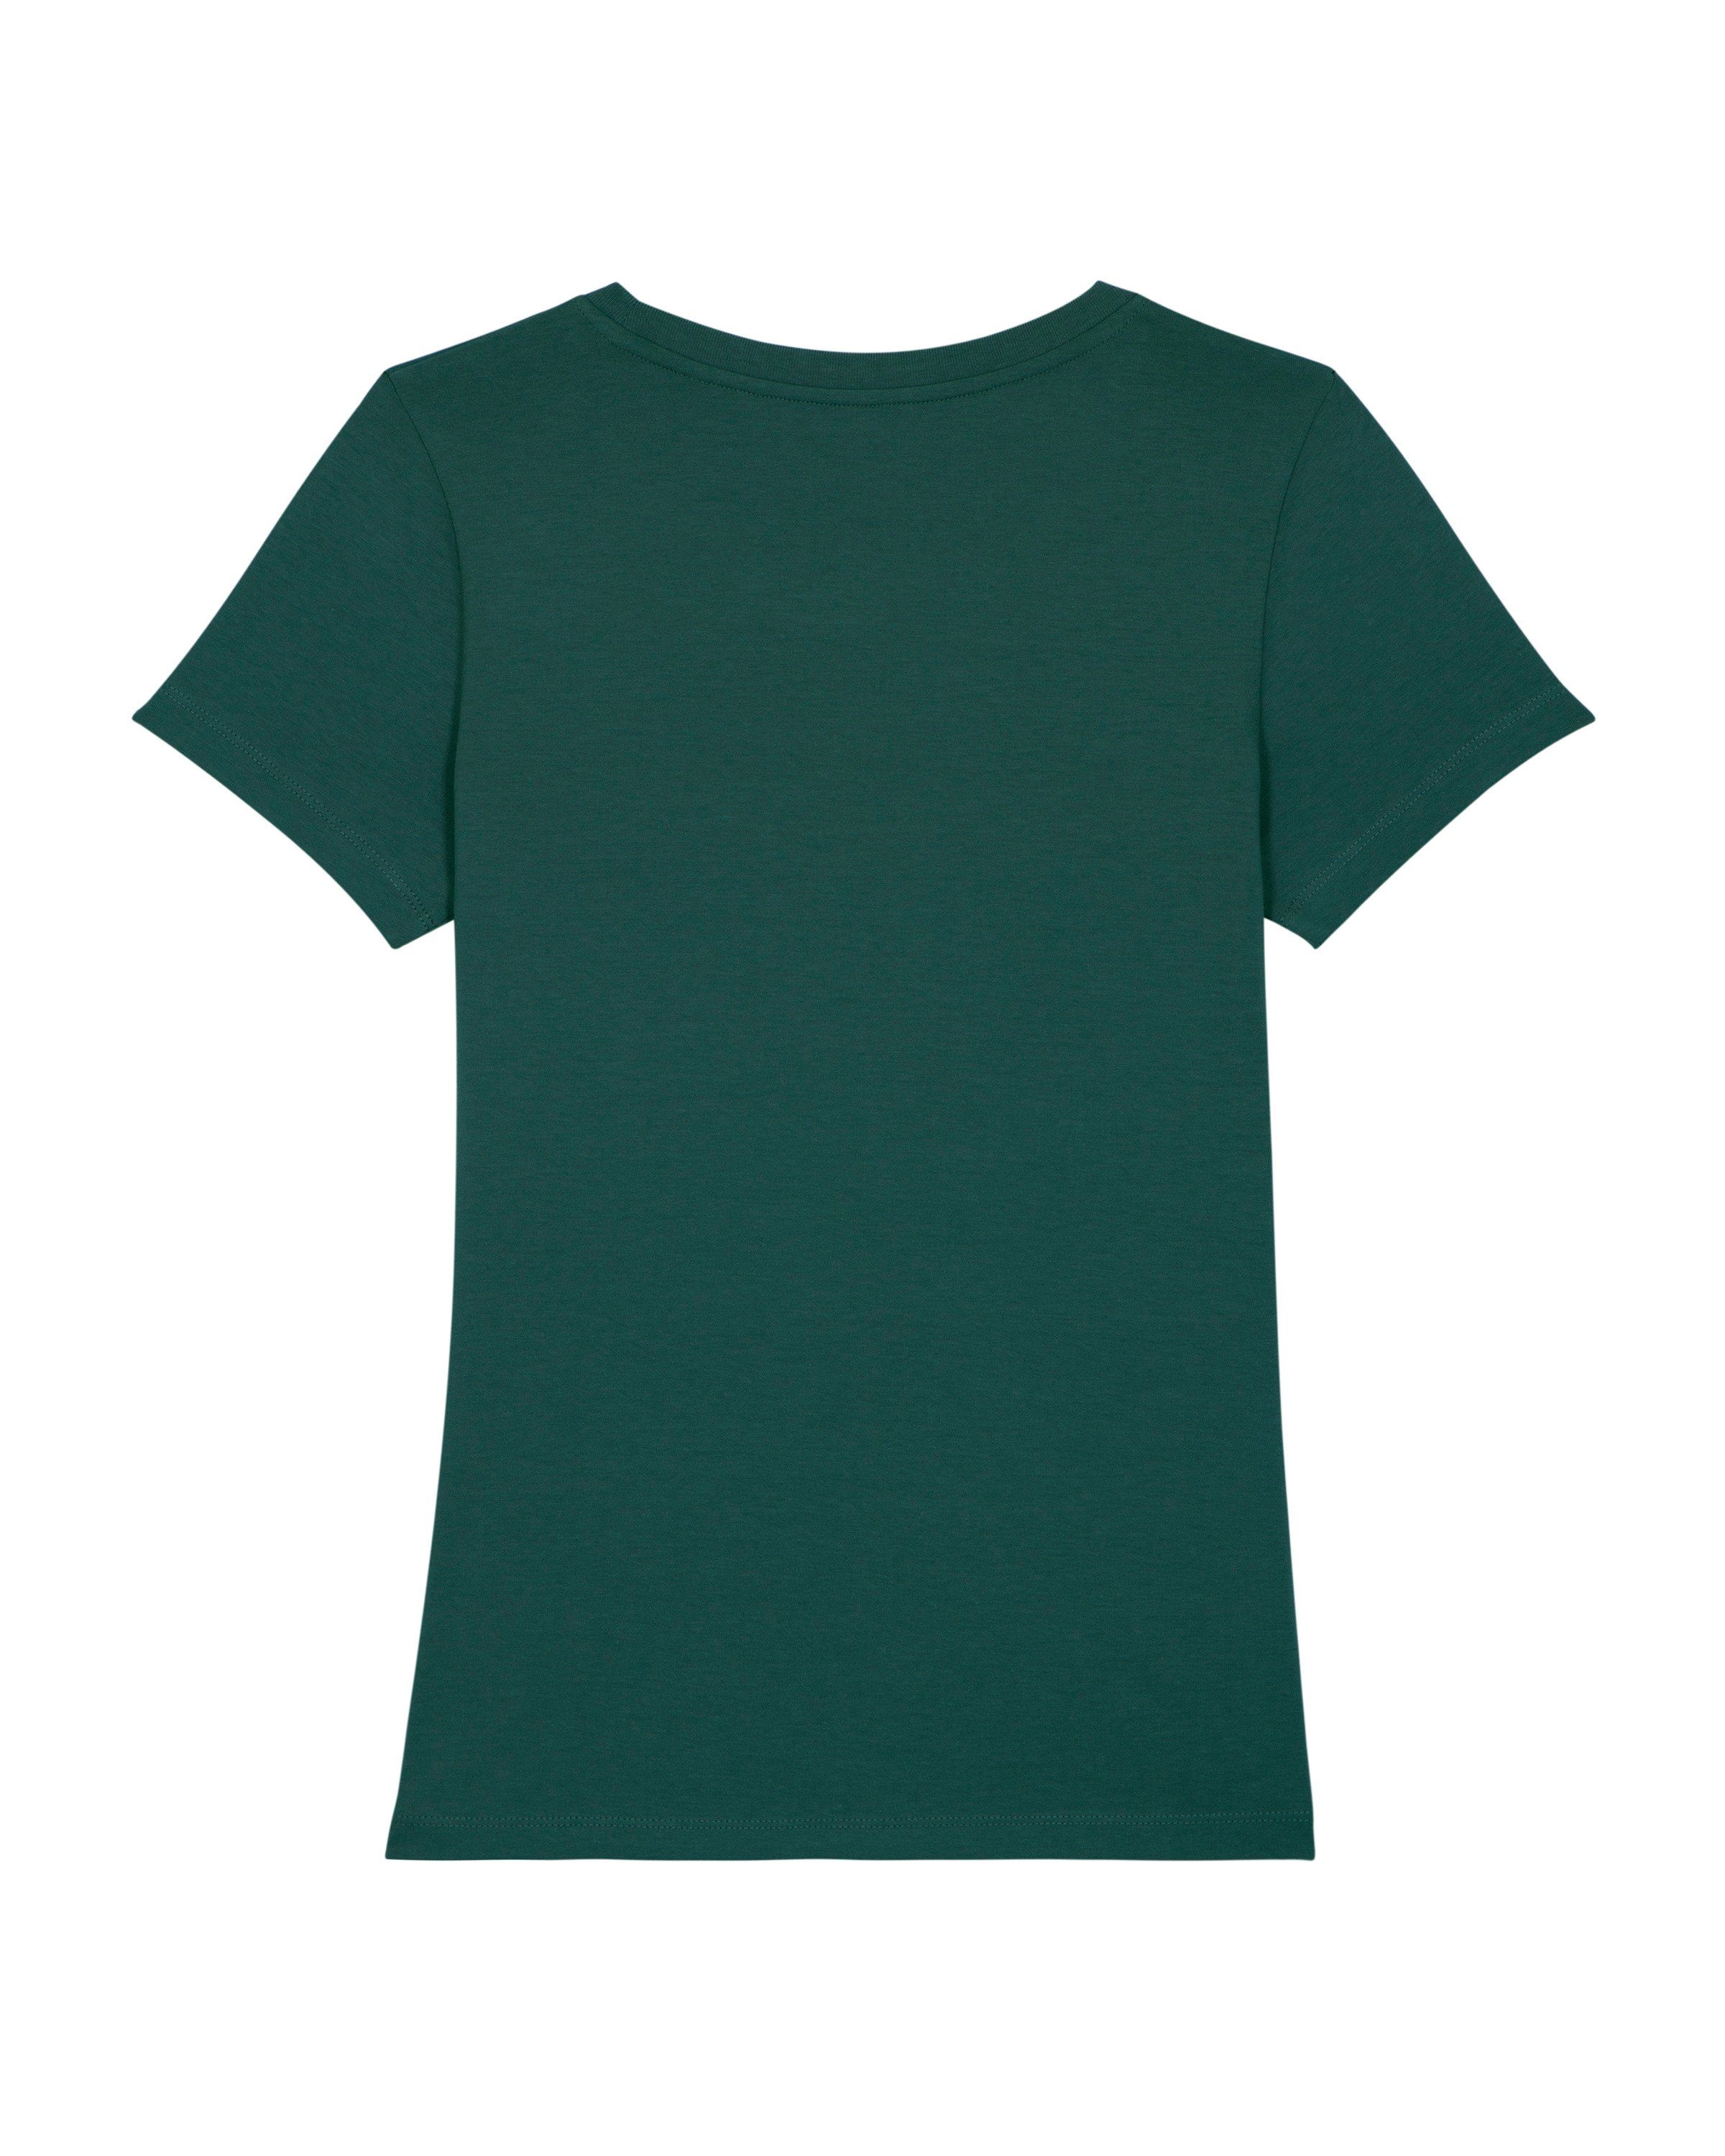 (1-tlg) grün Print-Shirt Apparel Fesch glazed wat?